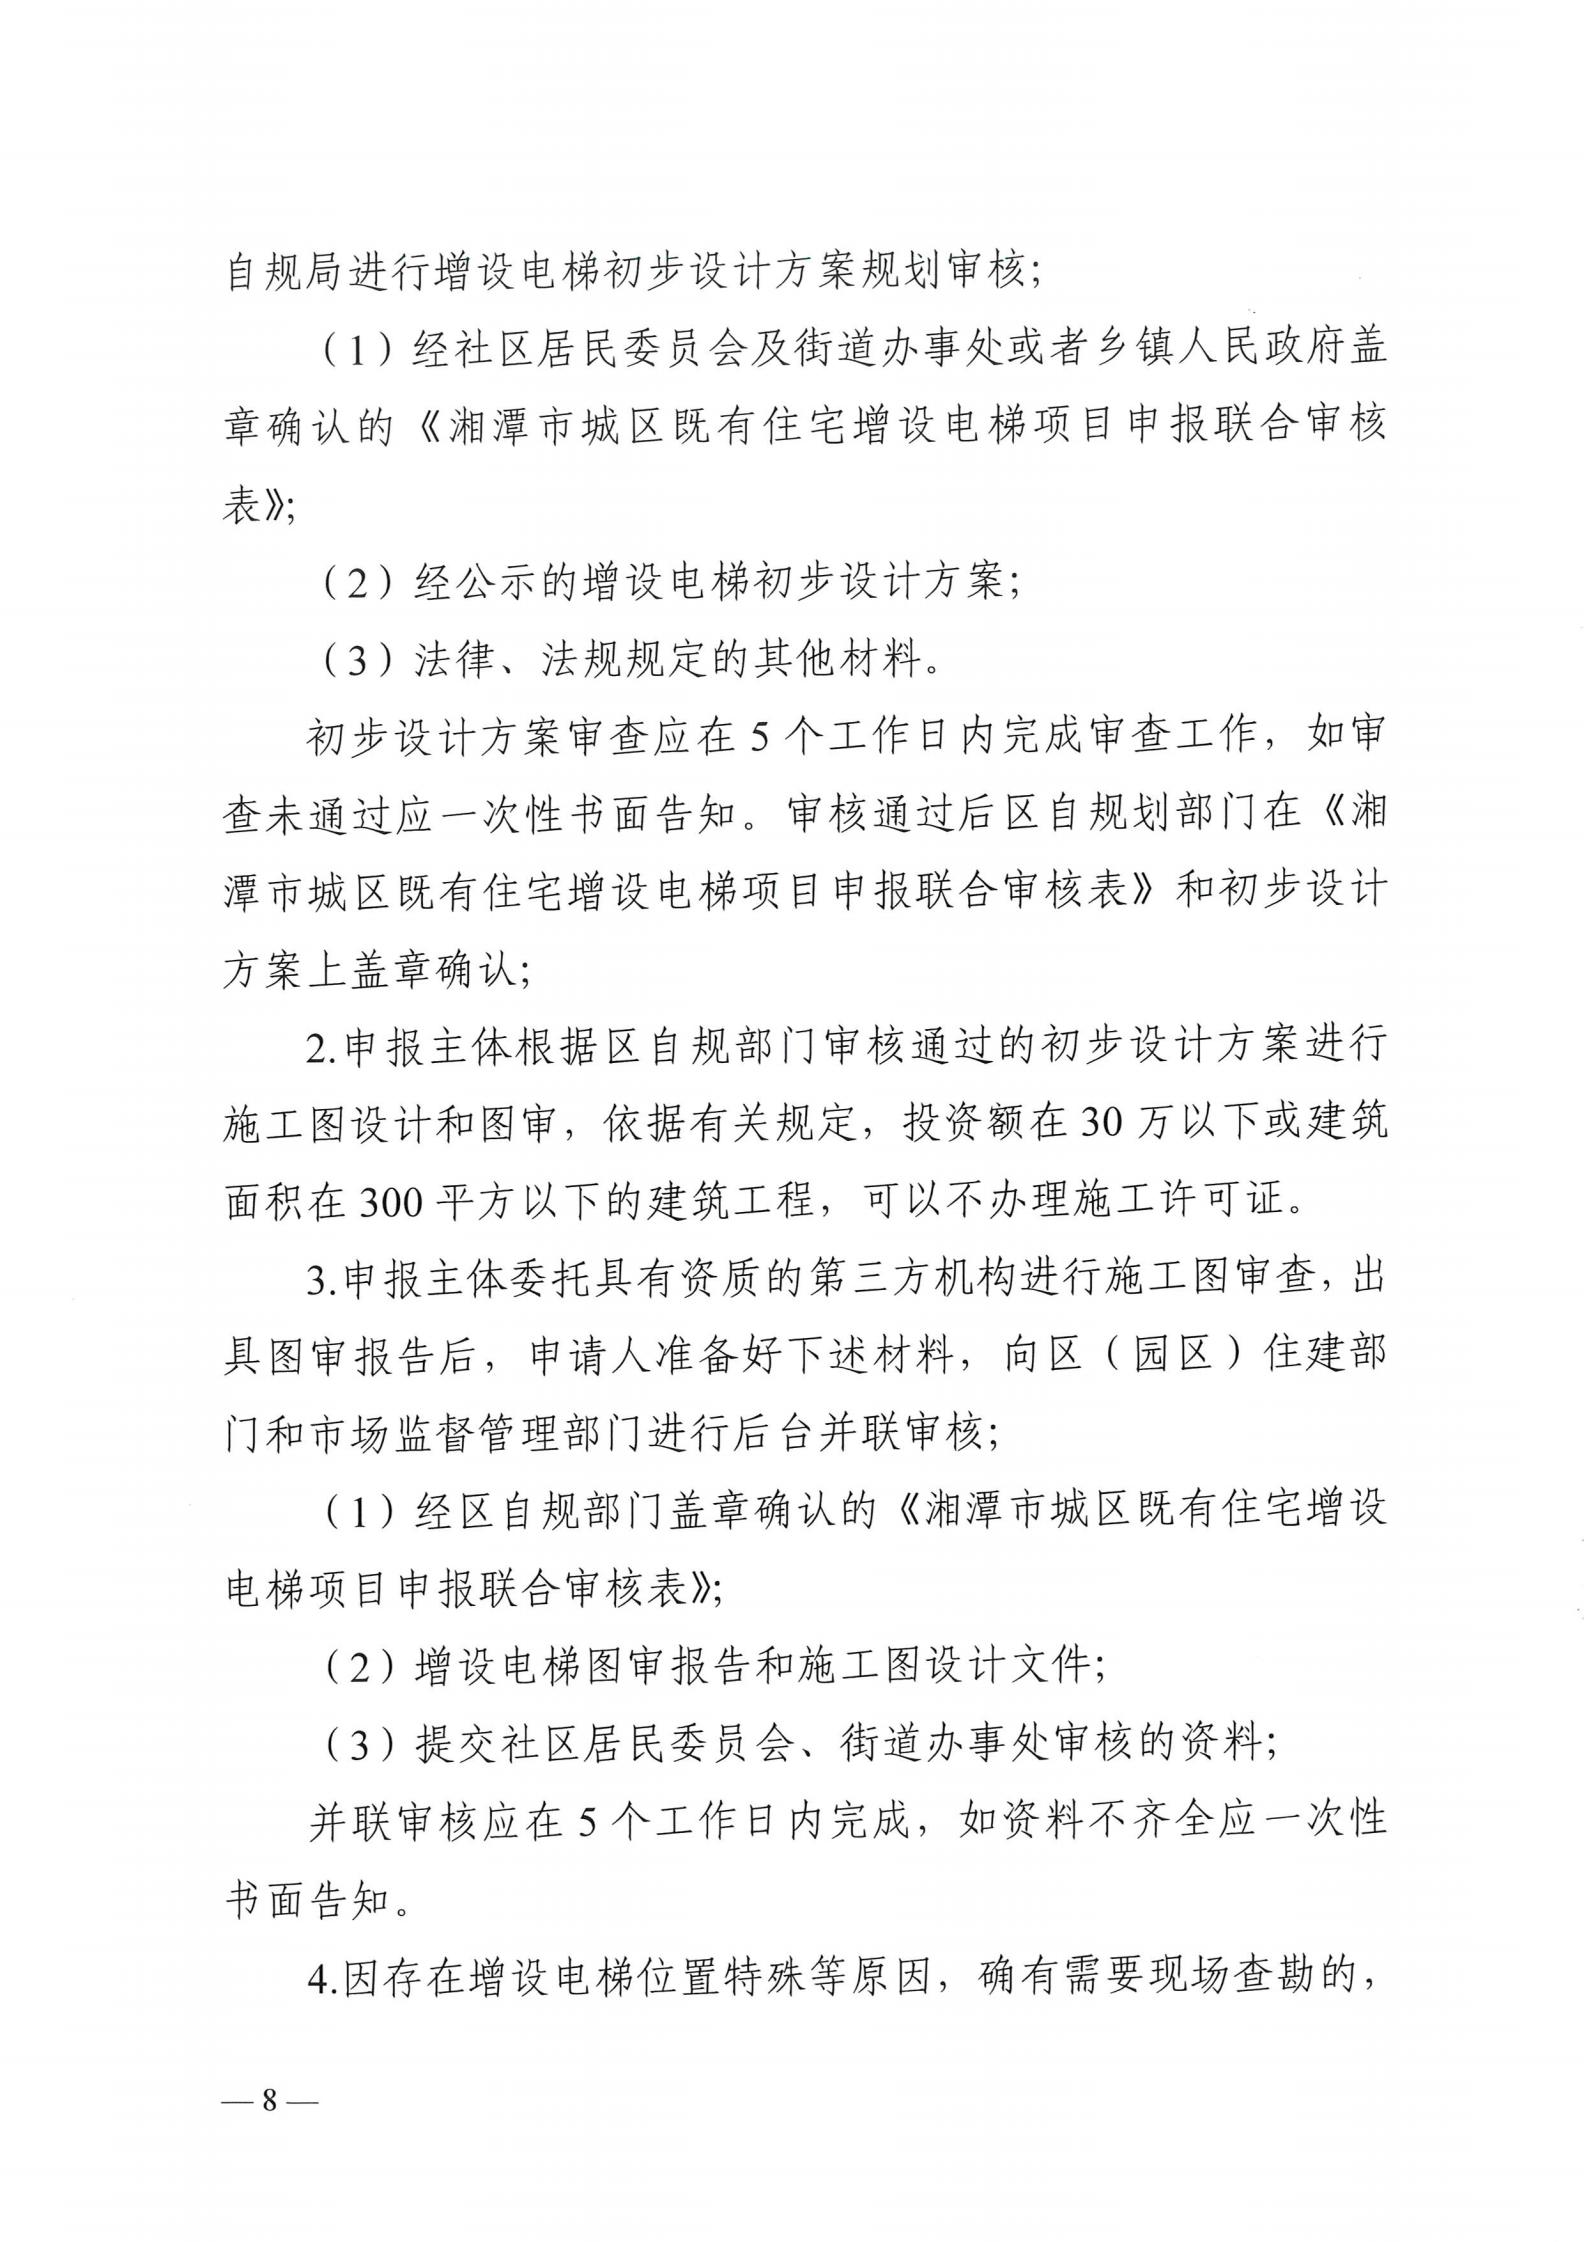 湘潭市六部门印发有关加装电梯的通知(图8)